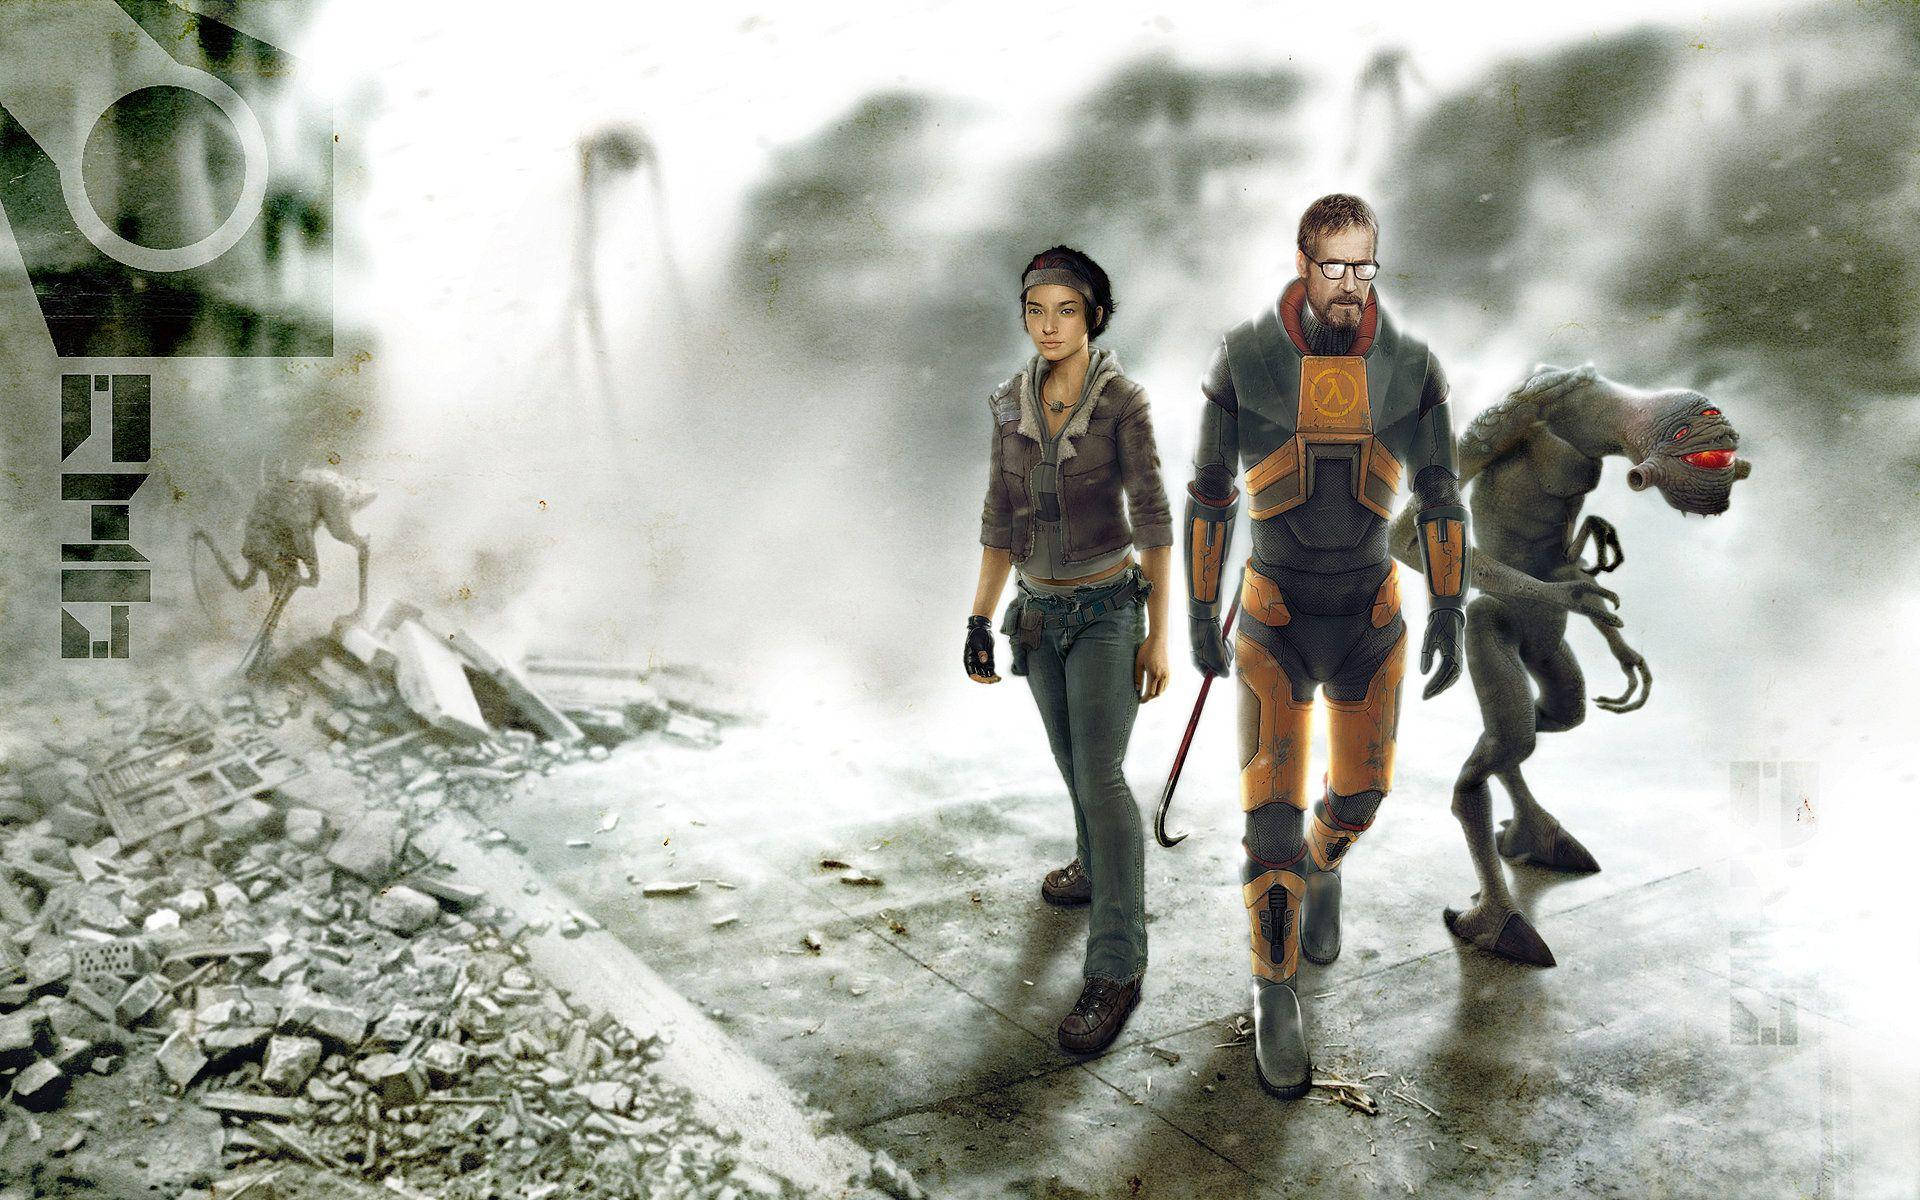 Half-life Main Characters Amid City Rubble